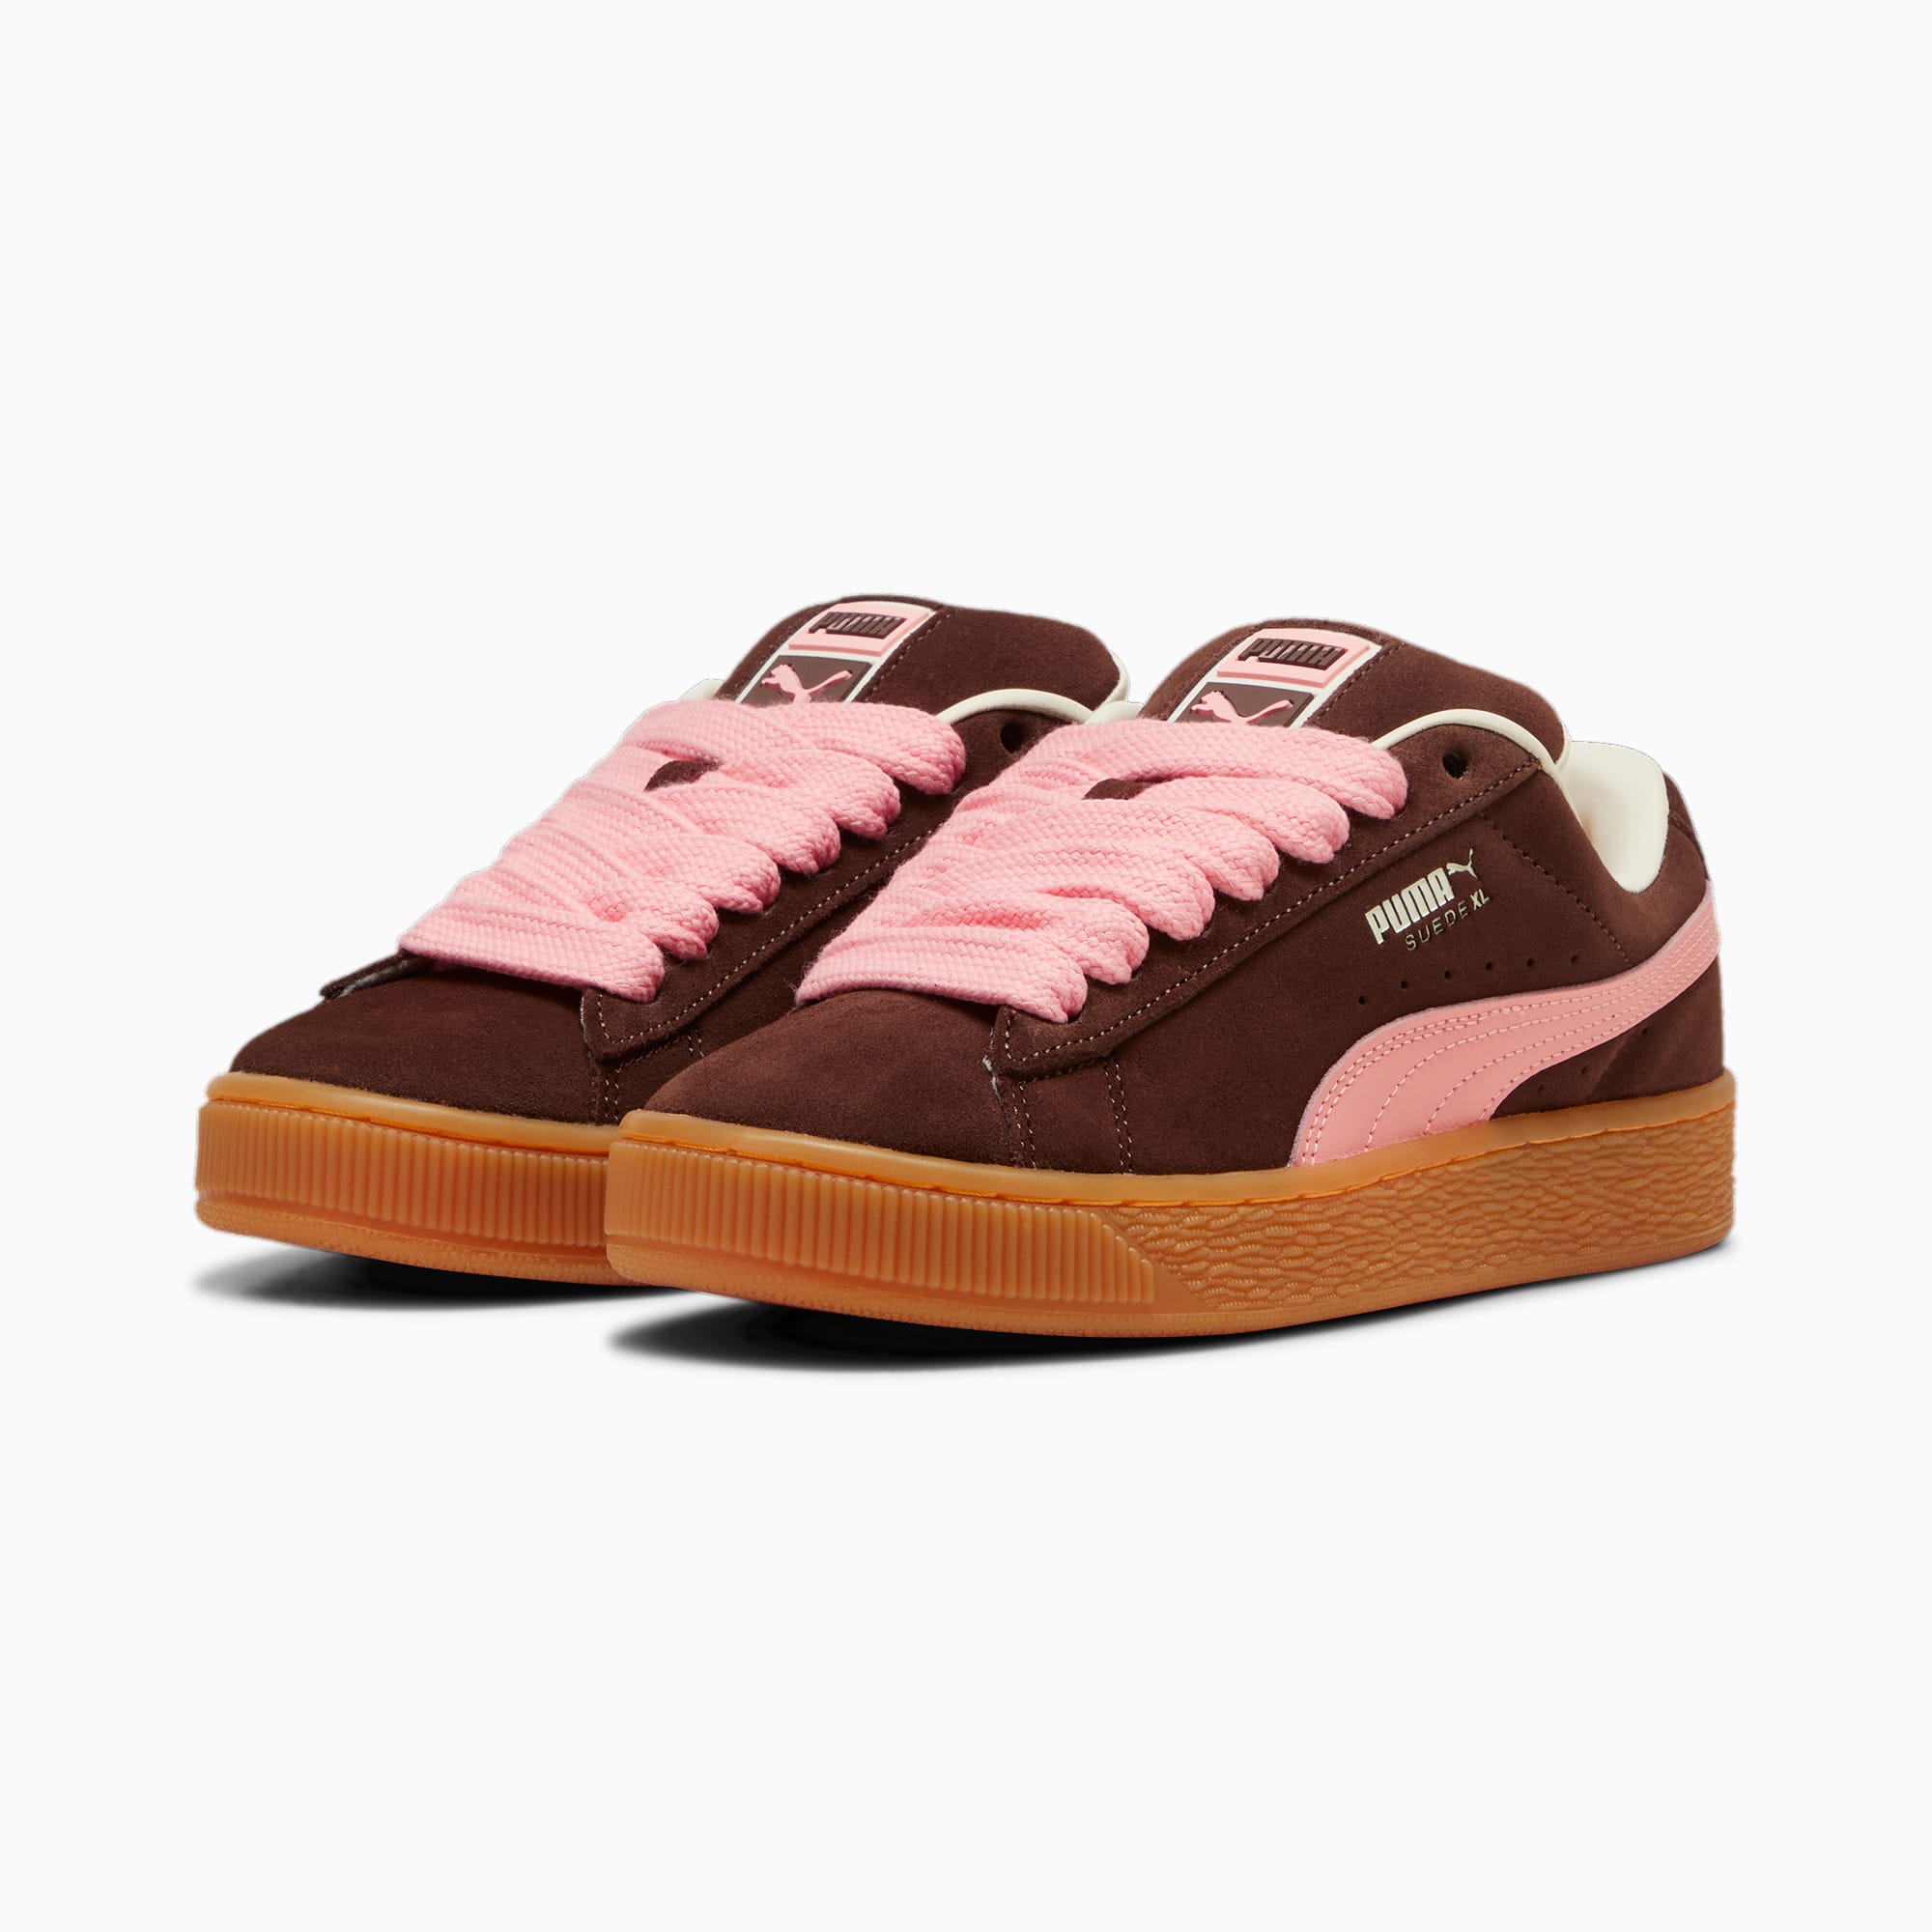 PUMA Suede XL Sneakers Damen Schuhe, Braun/Rosa, Größe: 40.5, Schuhe